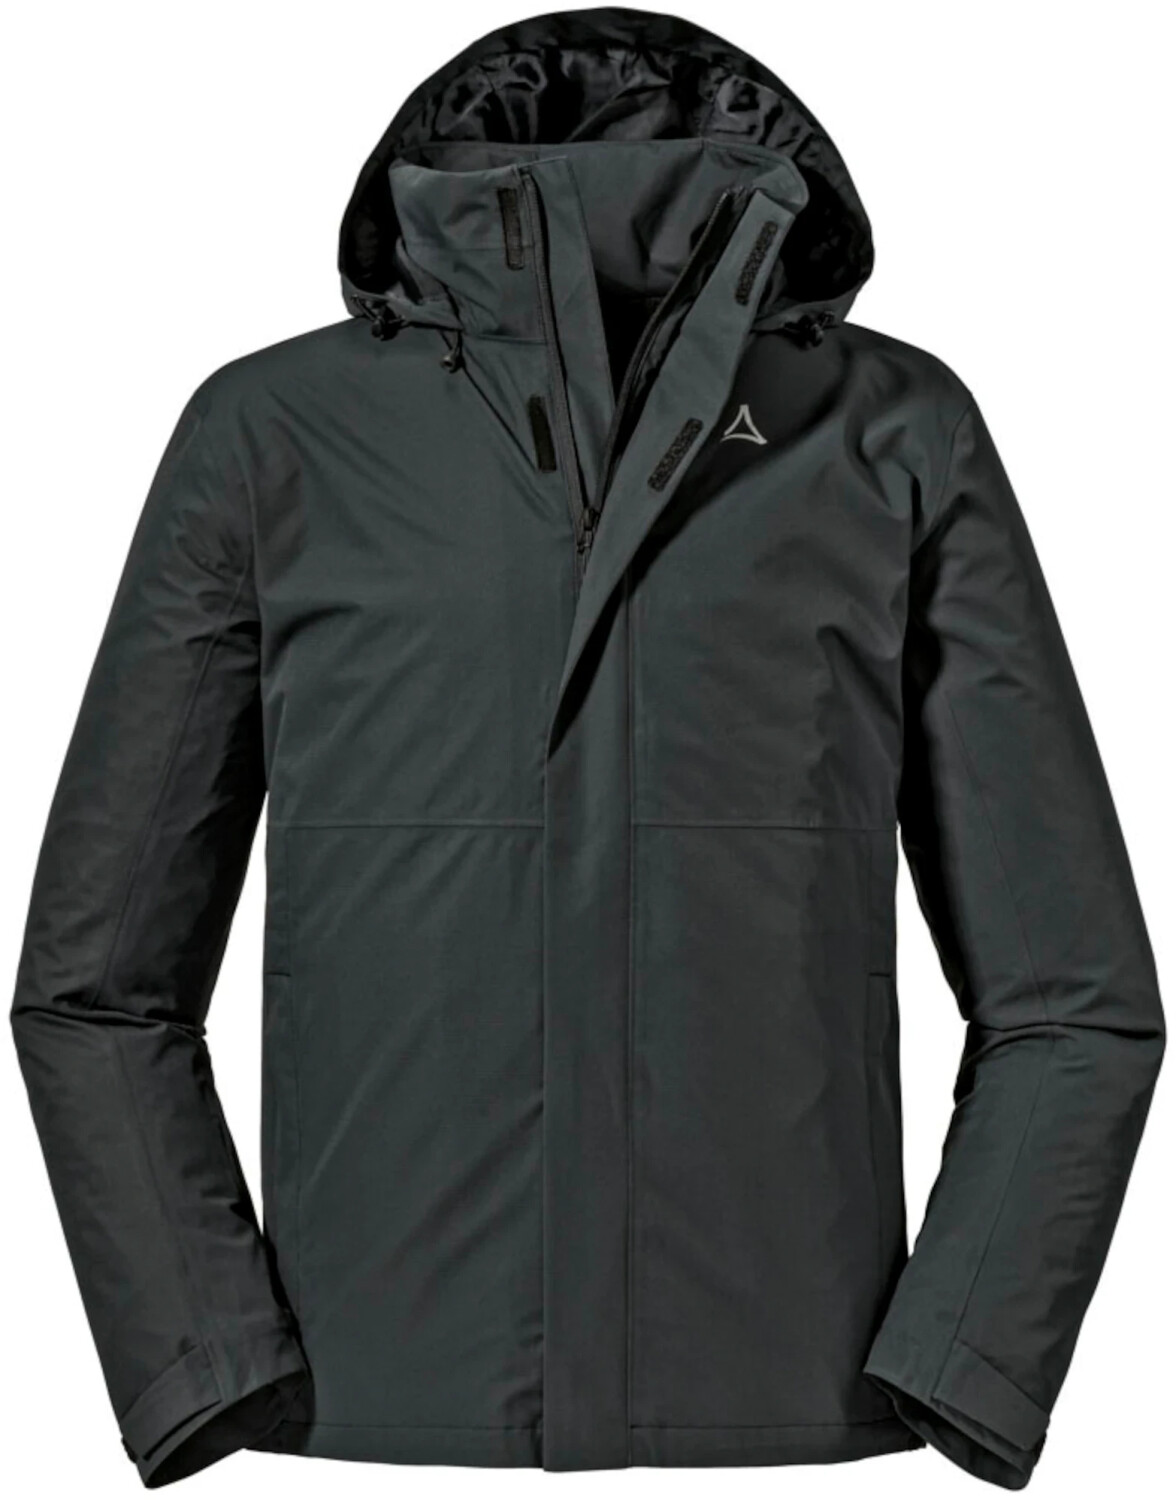 Schöffel Jacket Gmund M black ab 69,90 € | Preisvergleich bei